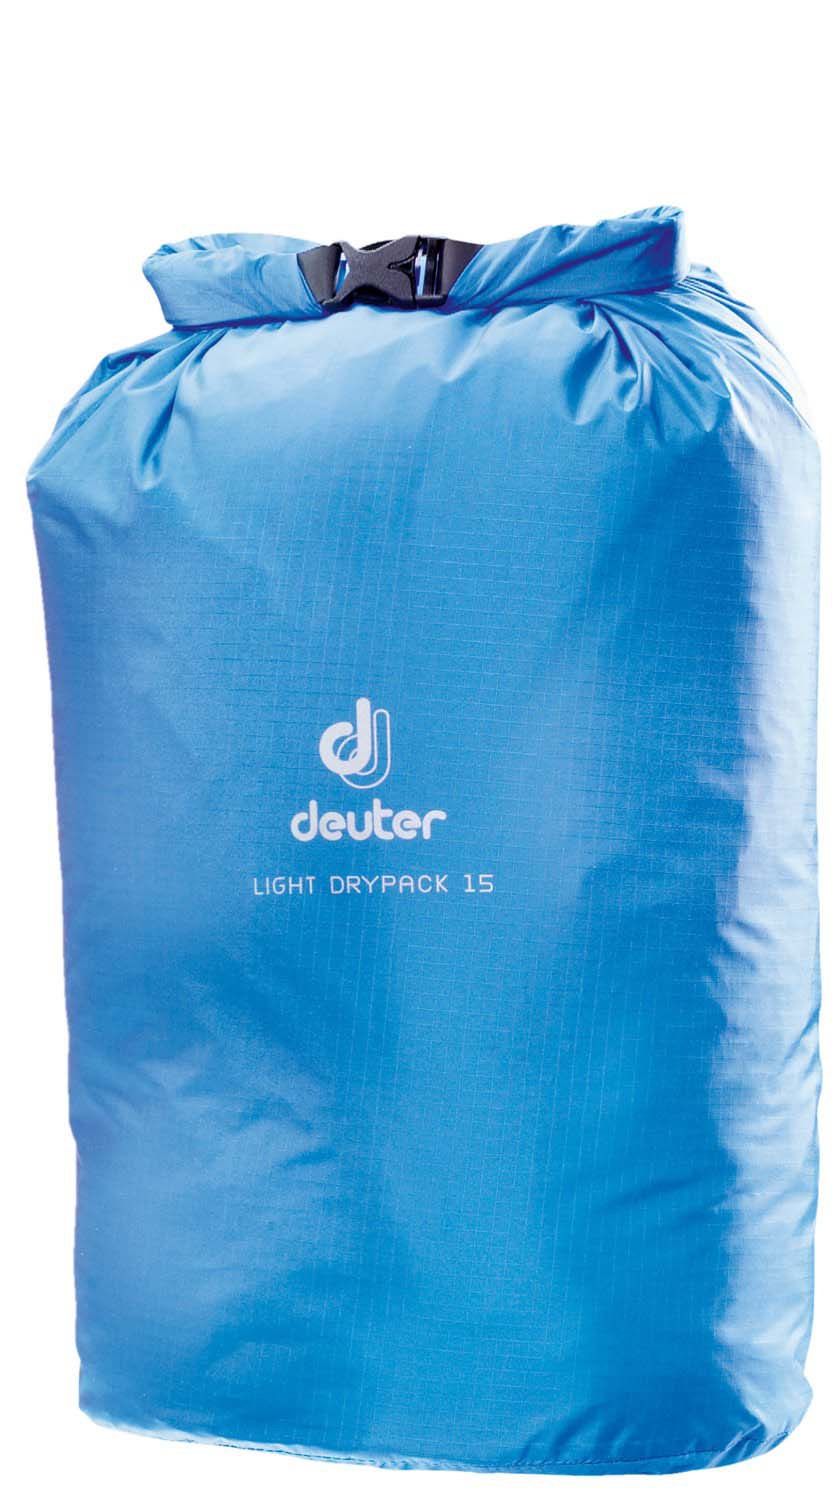 Deuter Packtasche Light Drypack 15 | jetzt online kaufen auf Koffer.de